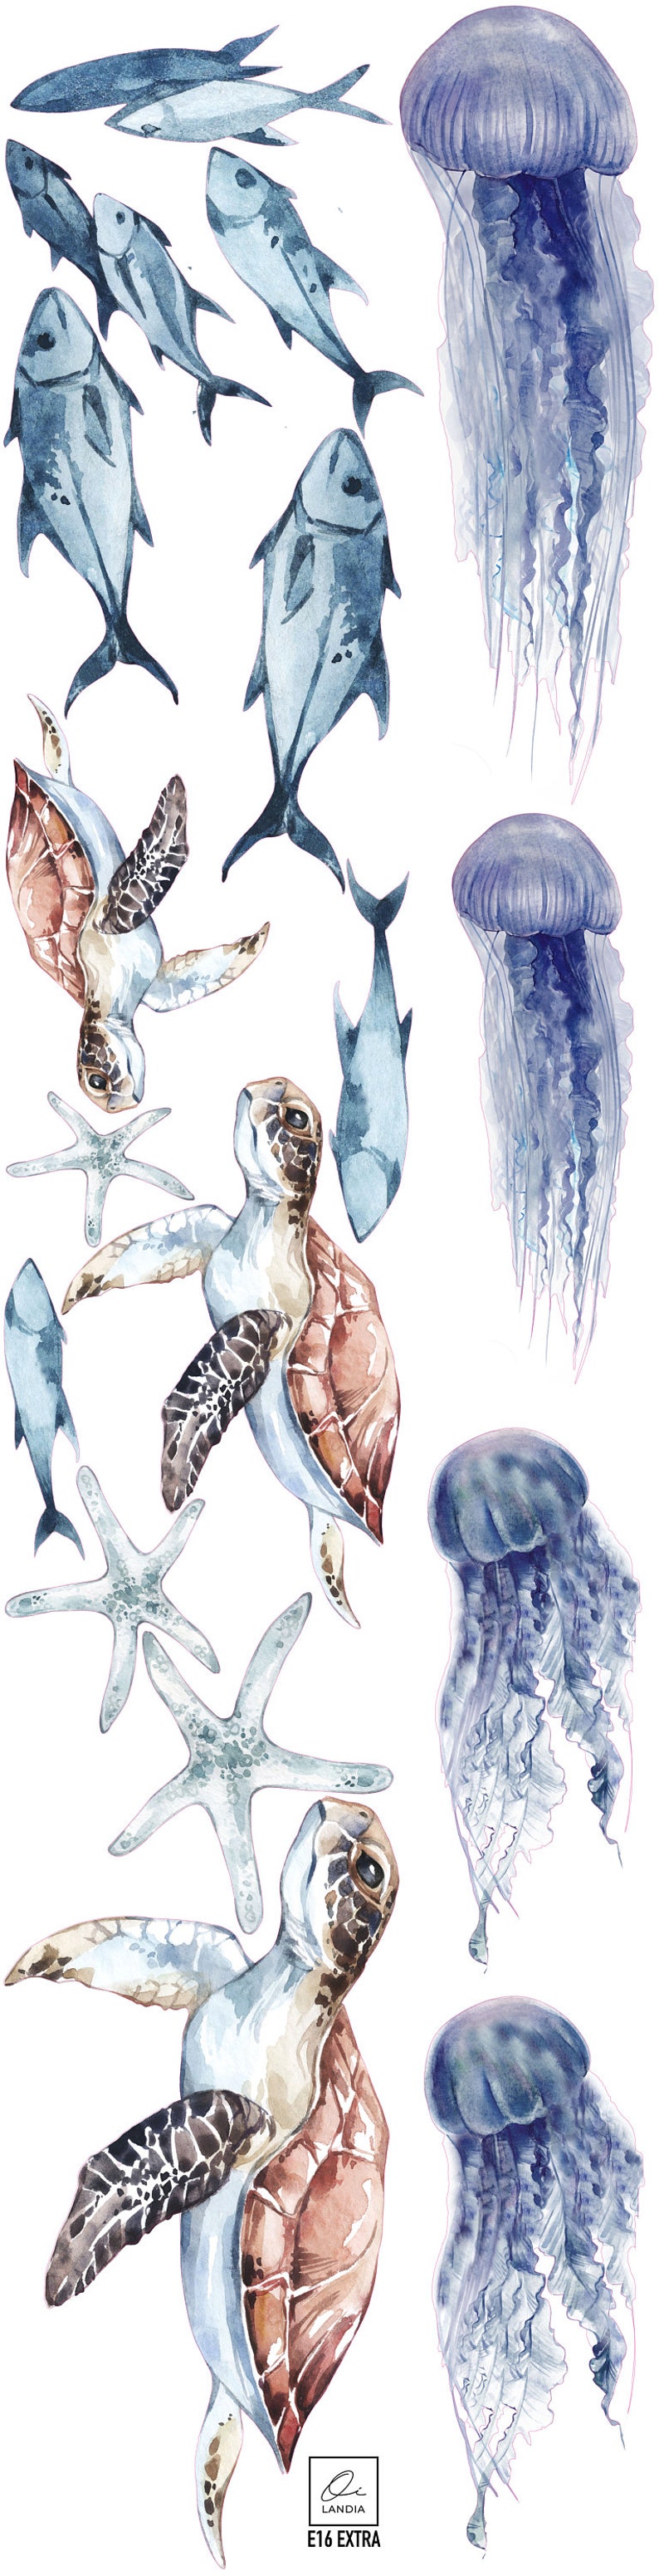 Sticker mural océan avec baleine, méduses, tortues, coraux pour enfants, Sticker mural baleine dans l'océan pour enfants baleine, méduses, tortues, coraux. image 7